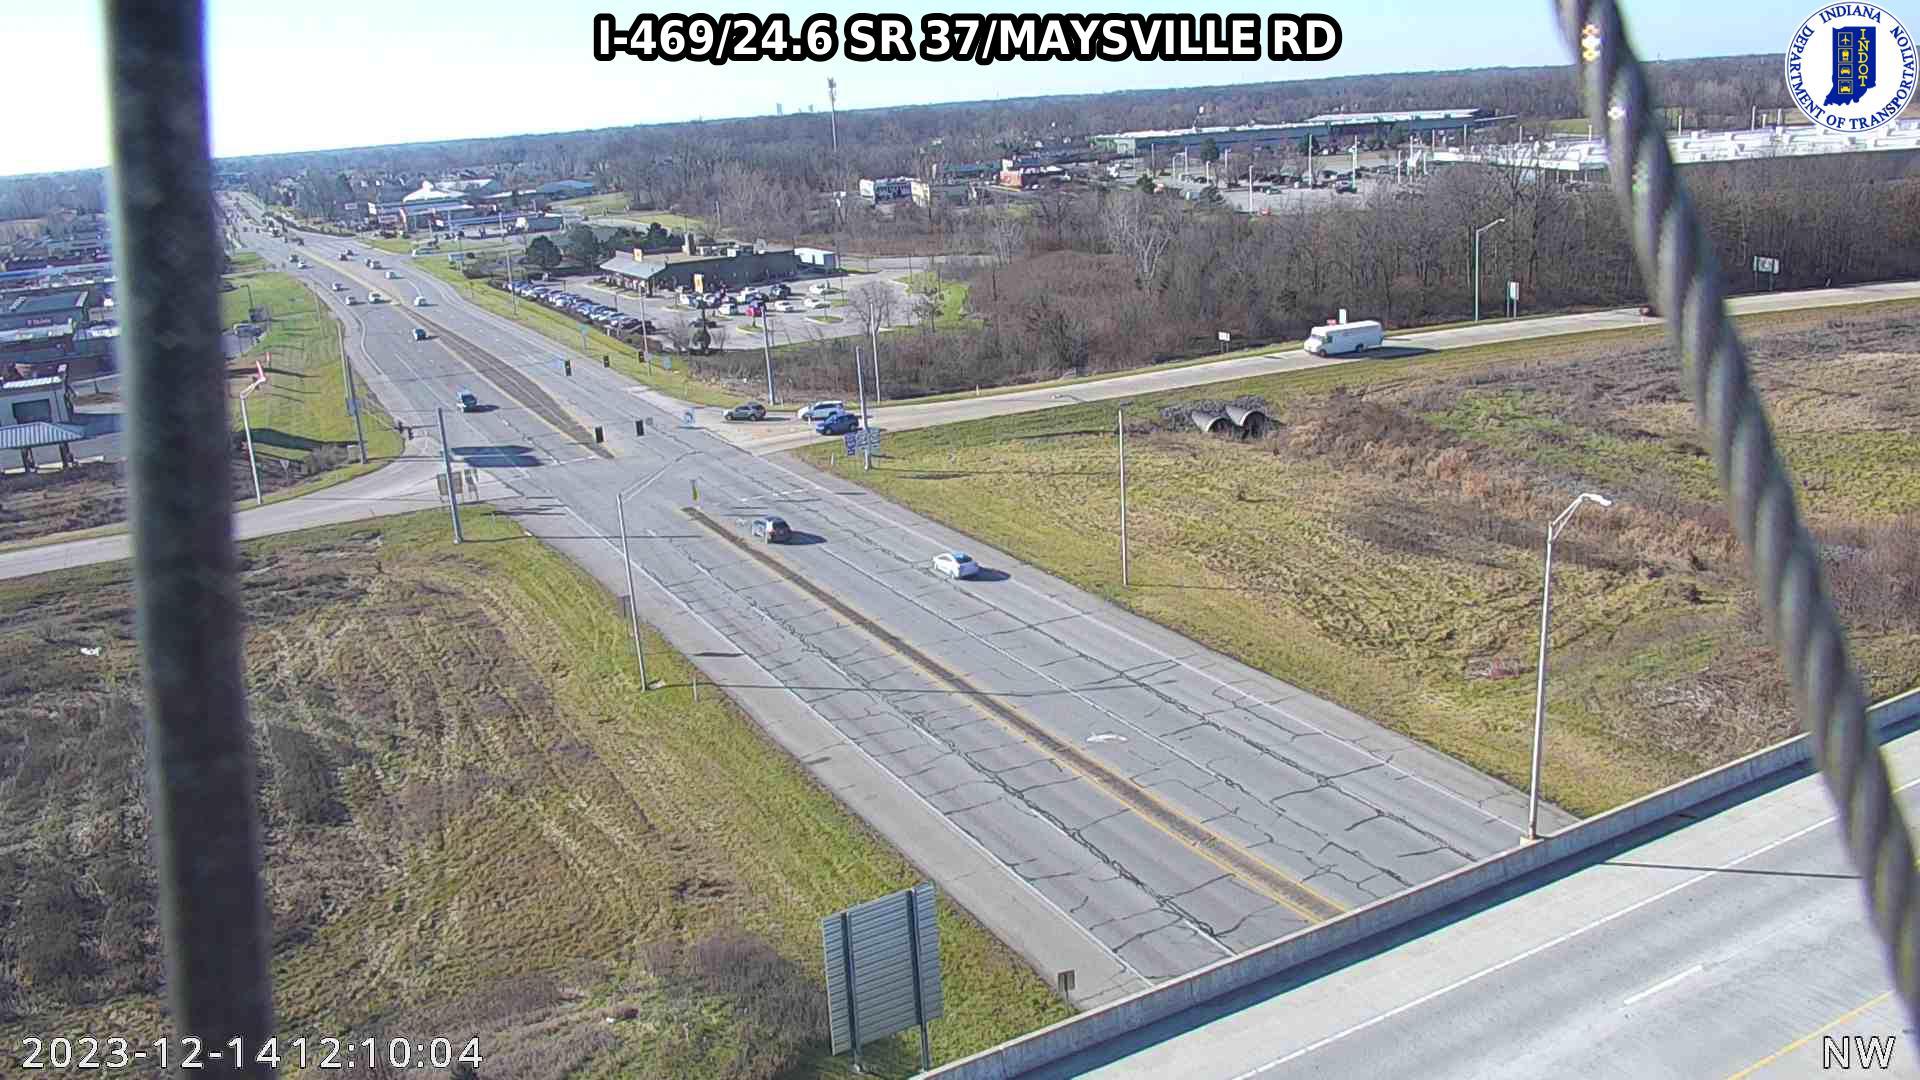 Thurman: I-469: I-469/24.6 SR 37/MAYSVILLE RD Traffic Camera